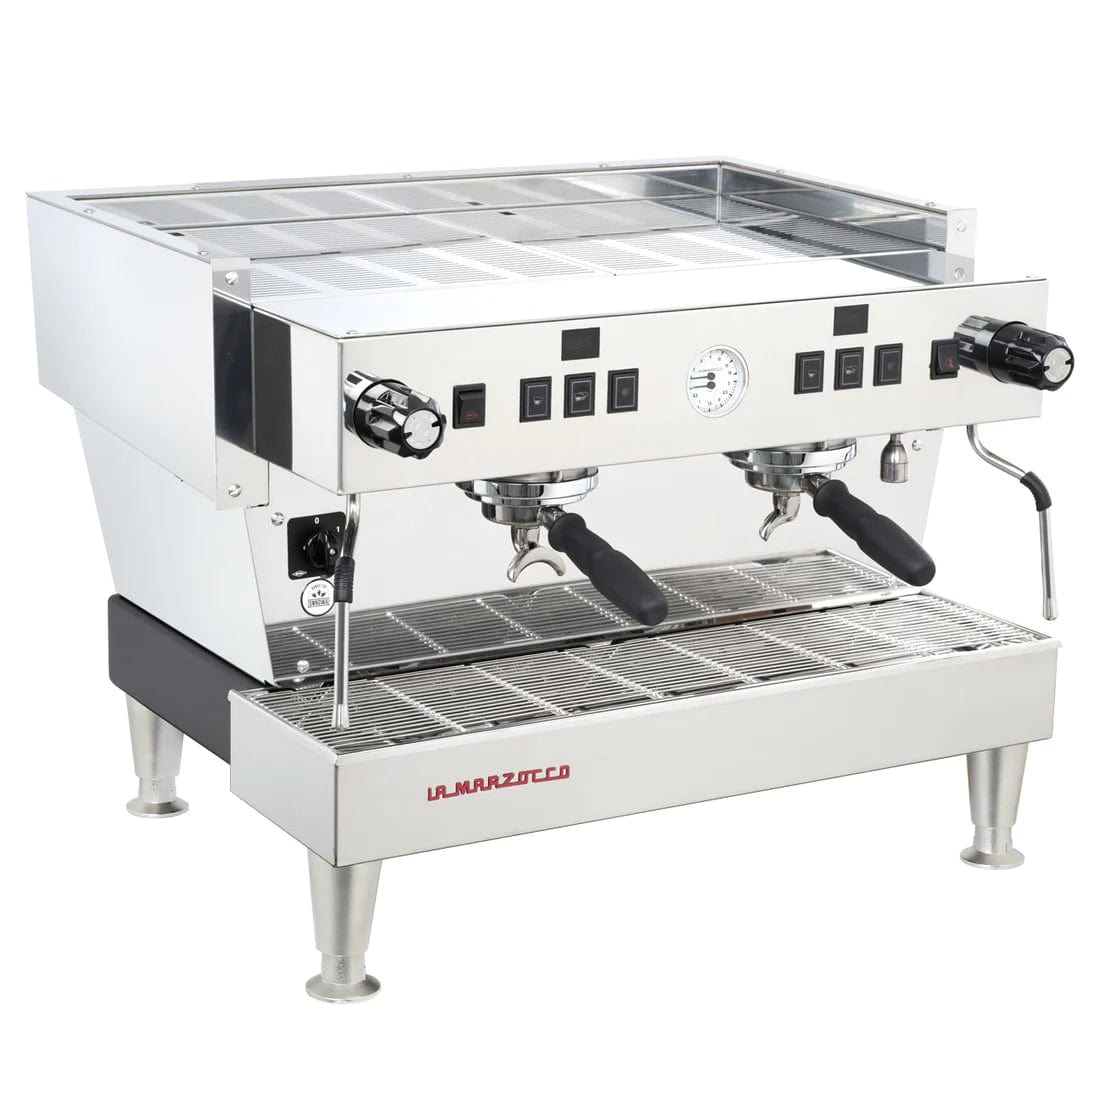 La Marzocco La Marzocco Linea Classic S AV Automatic Espresso Machine Espresso Machines 2 Group, Stainless Steel